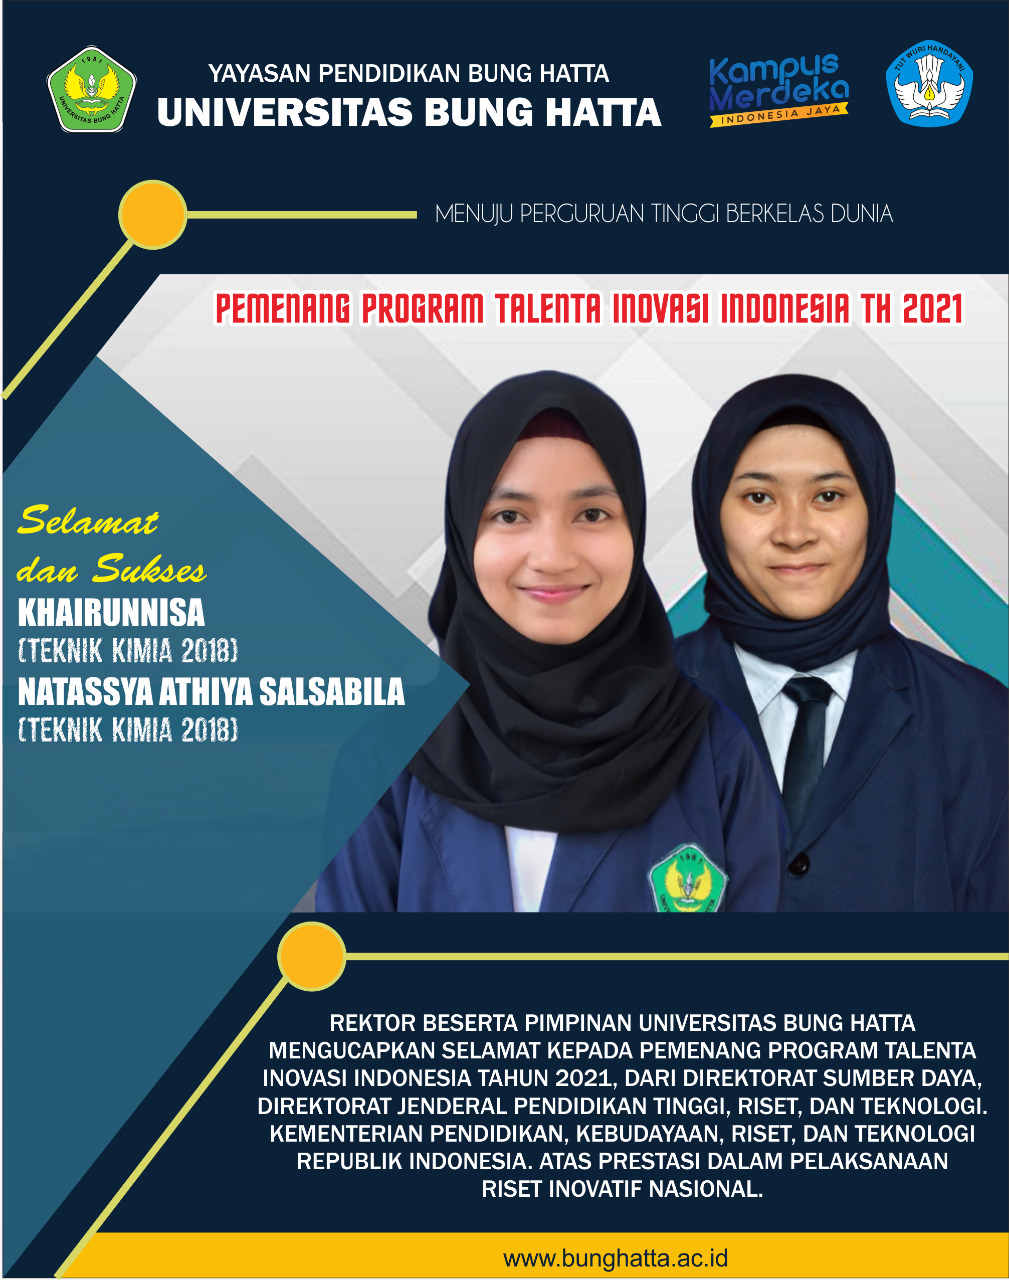 Dua Mahasiswa Universitas Bung Hatta Pemenang Program Talenta Inovasi Indonesia 2021